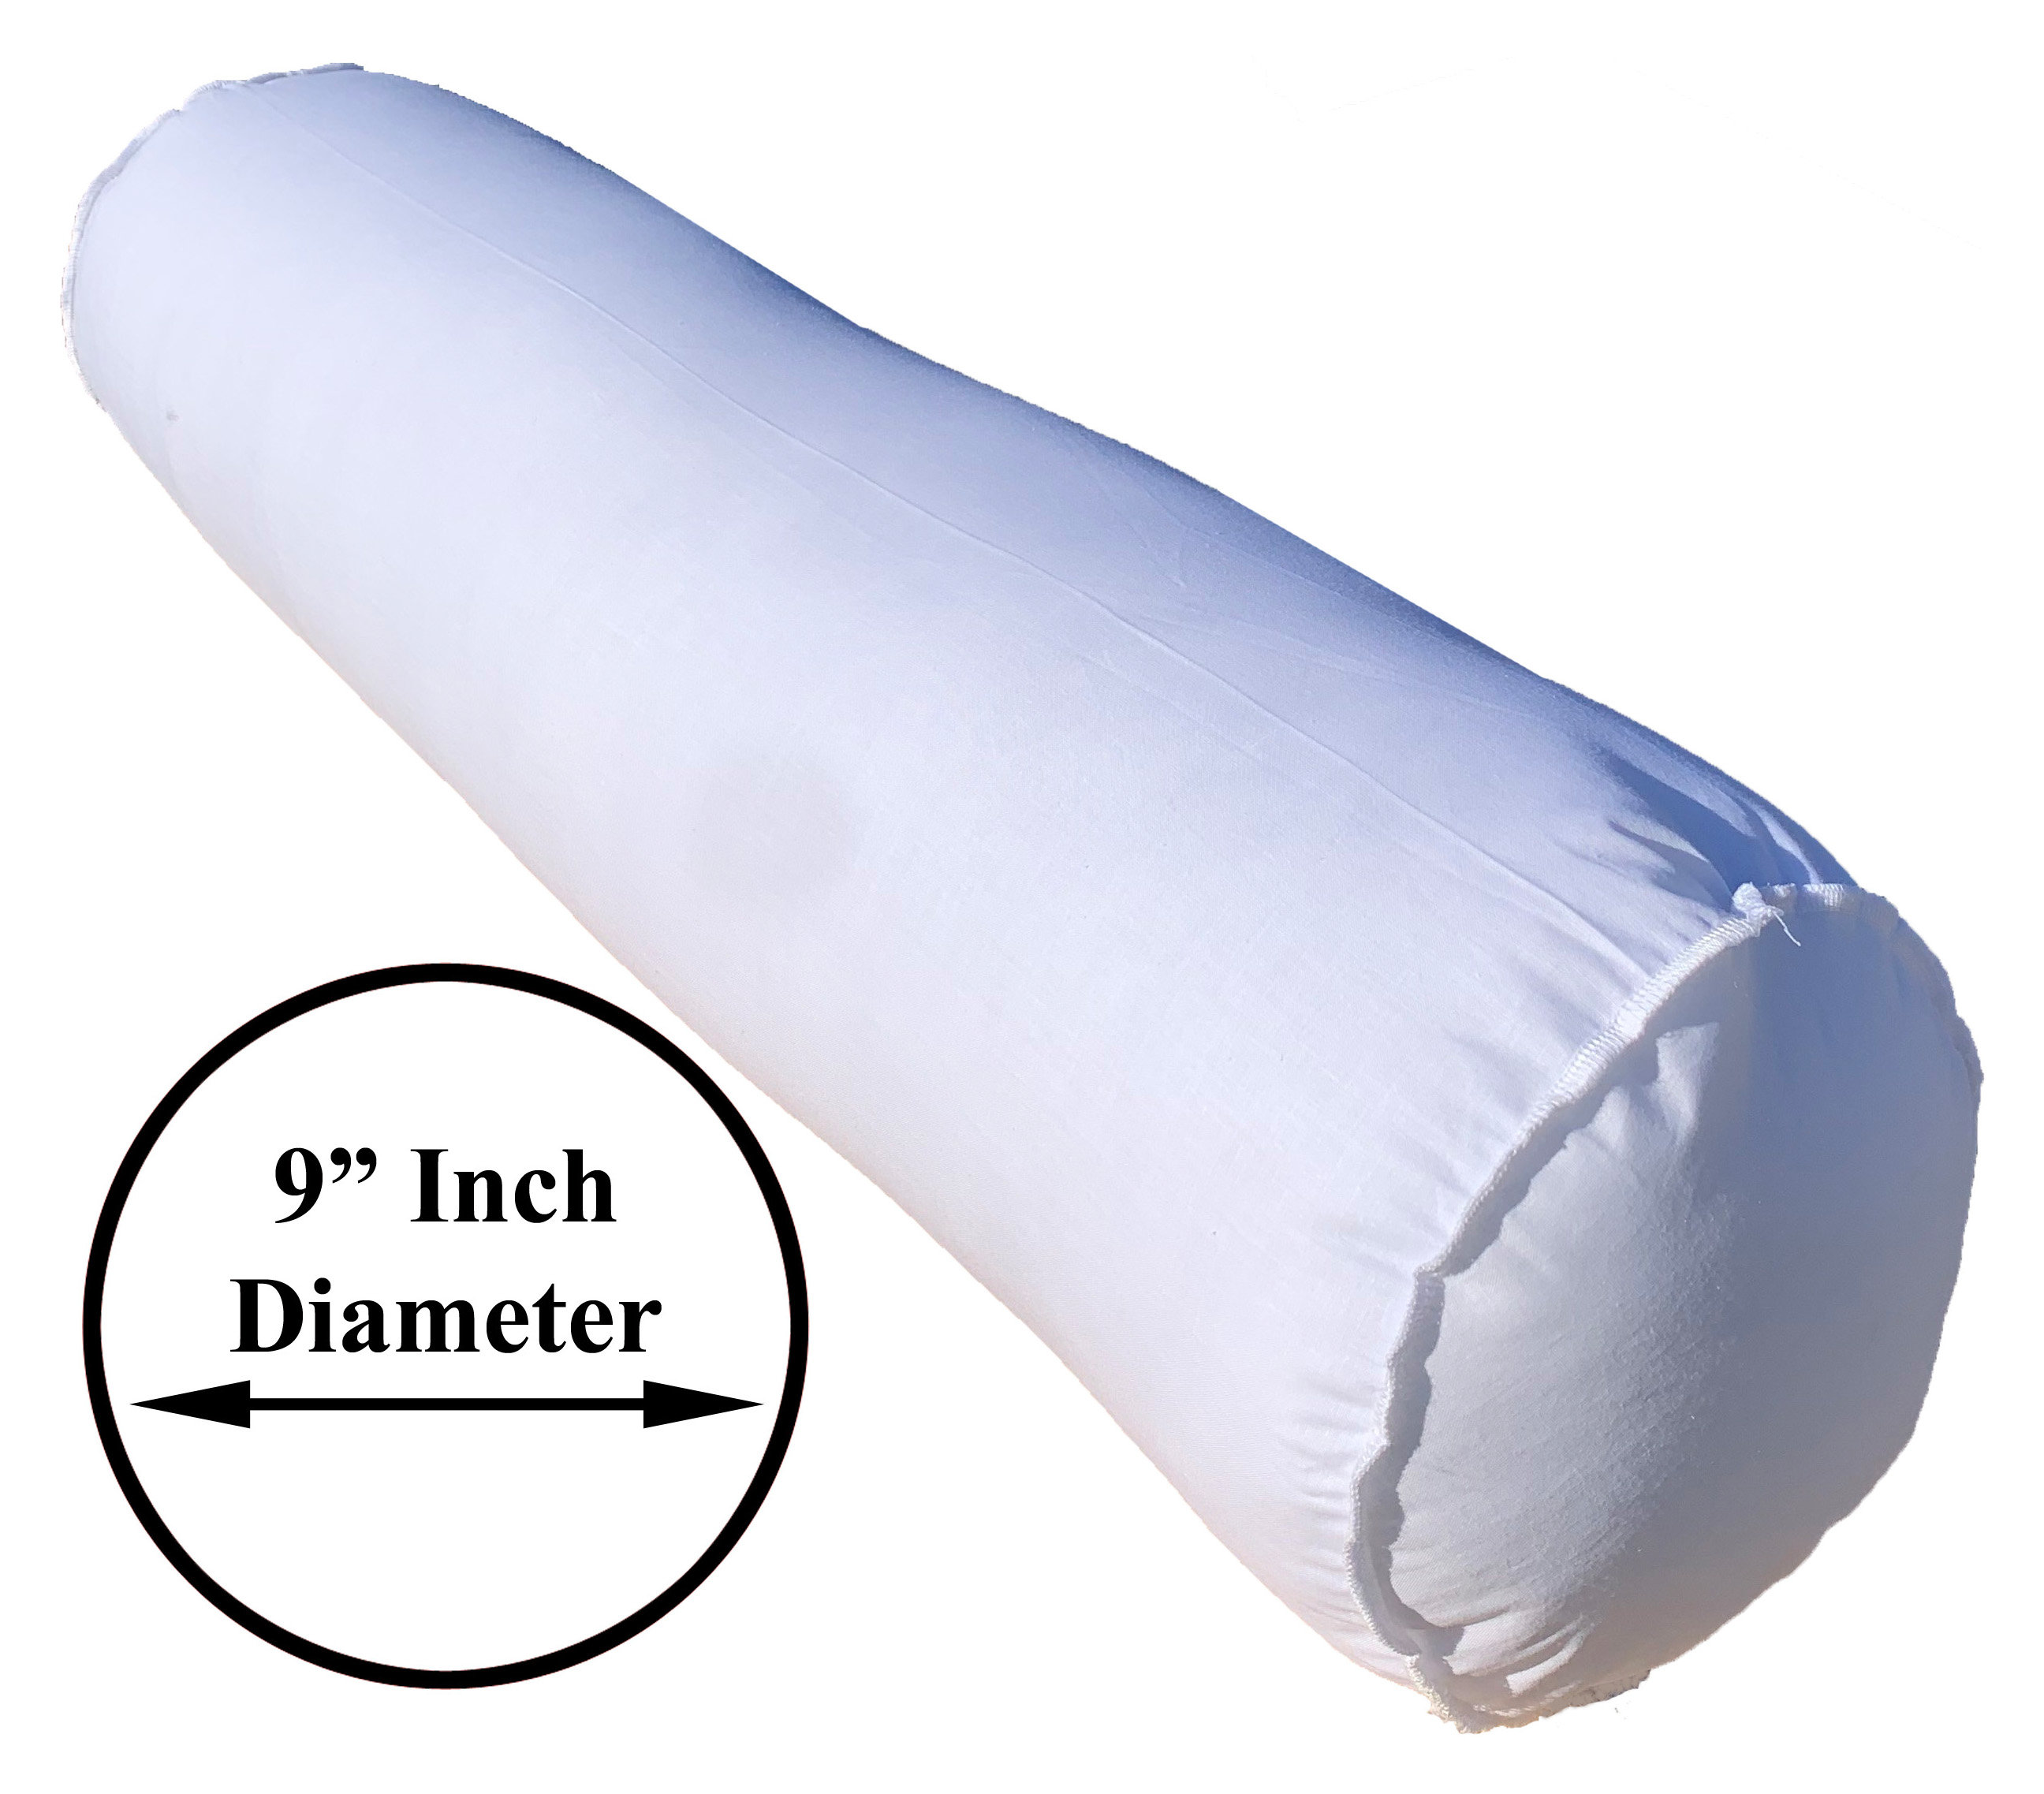 Pillowflex Synthetic Down Pillow Insert - 28x28 Down Alternative Pillow,  Ultra Soft Body Pillow, Large Standard Body Bed Sleeping Pillow - 1